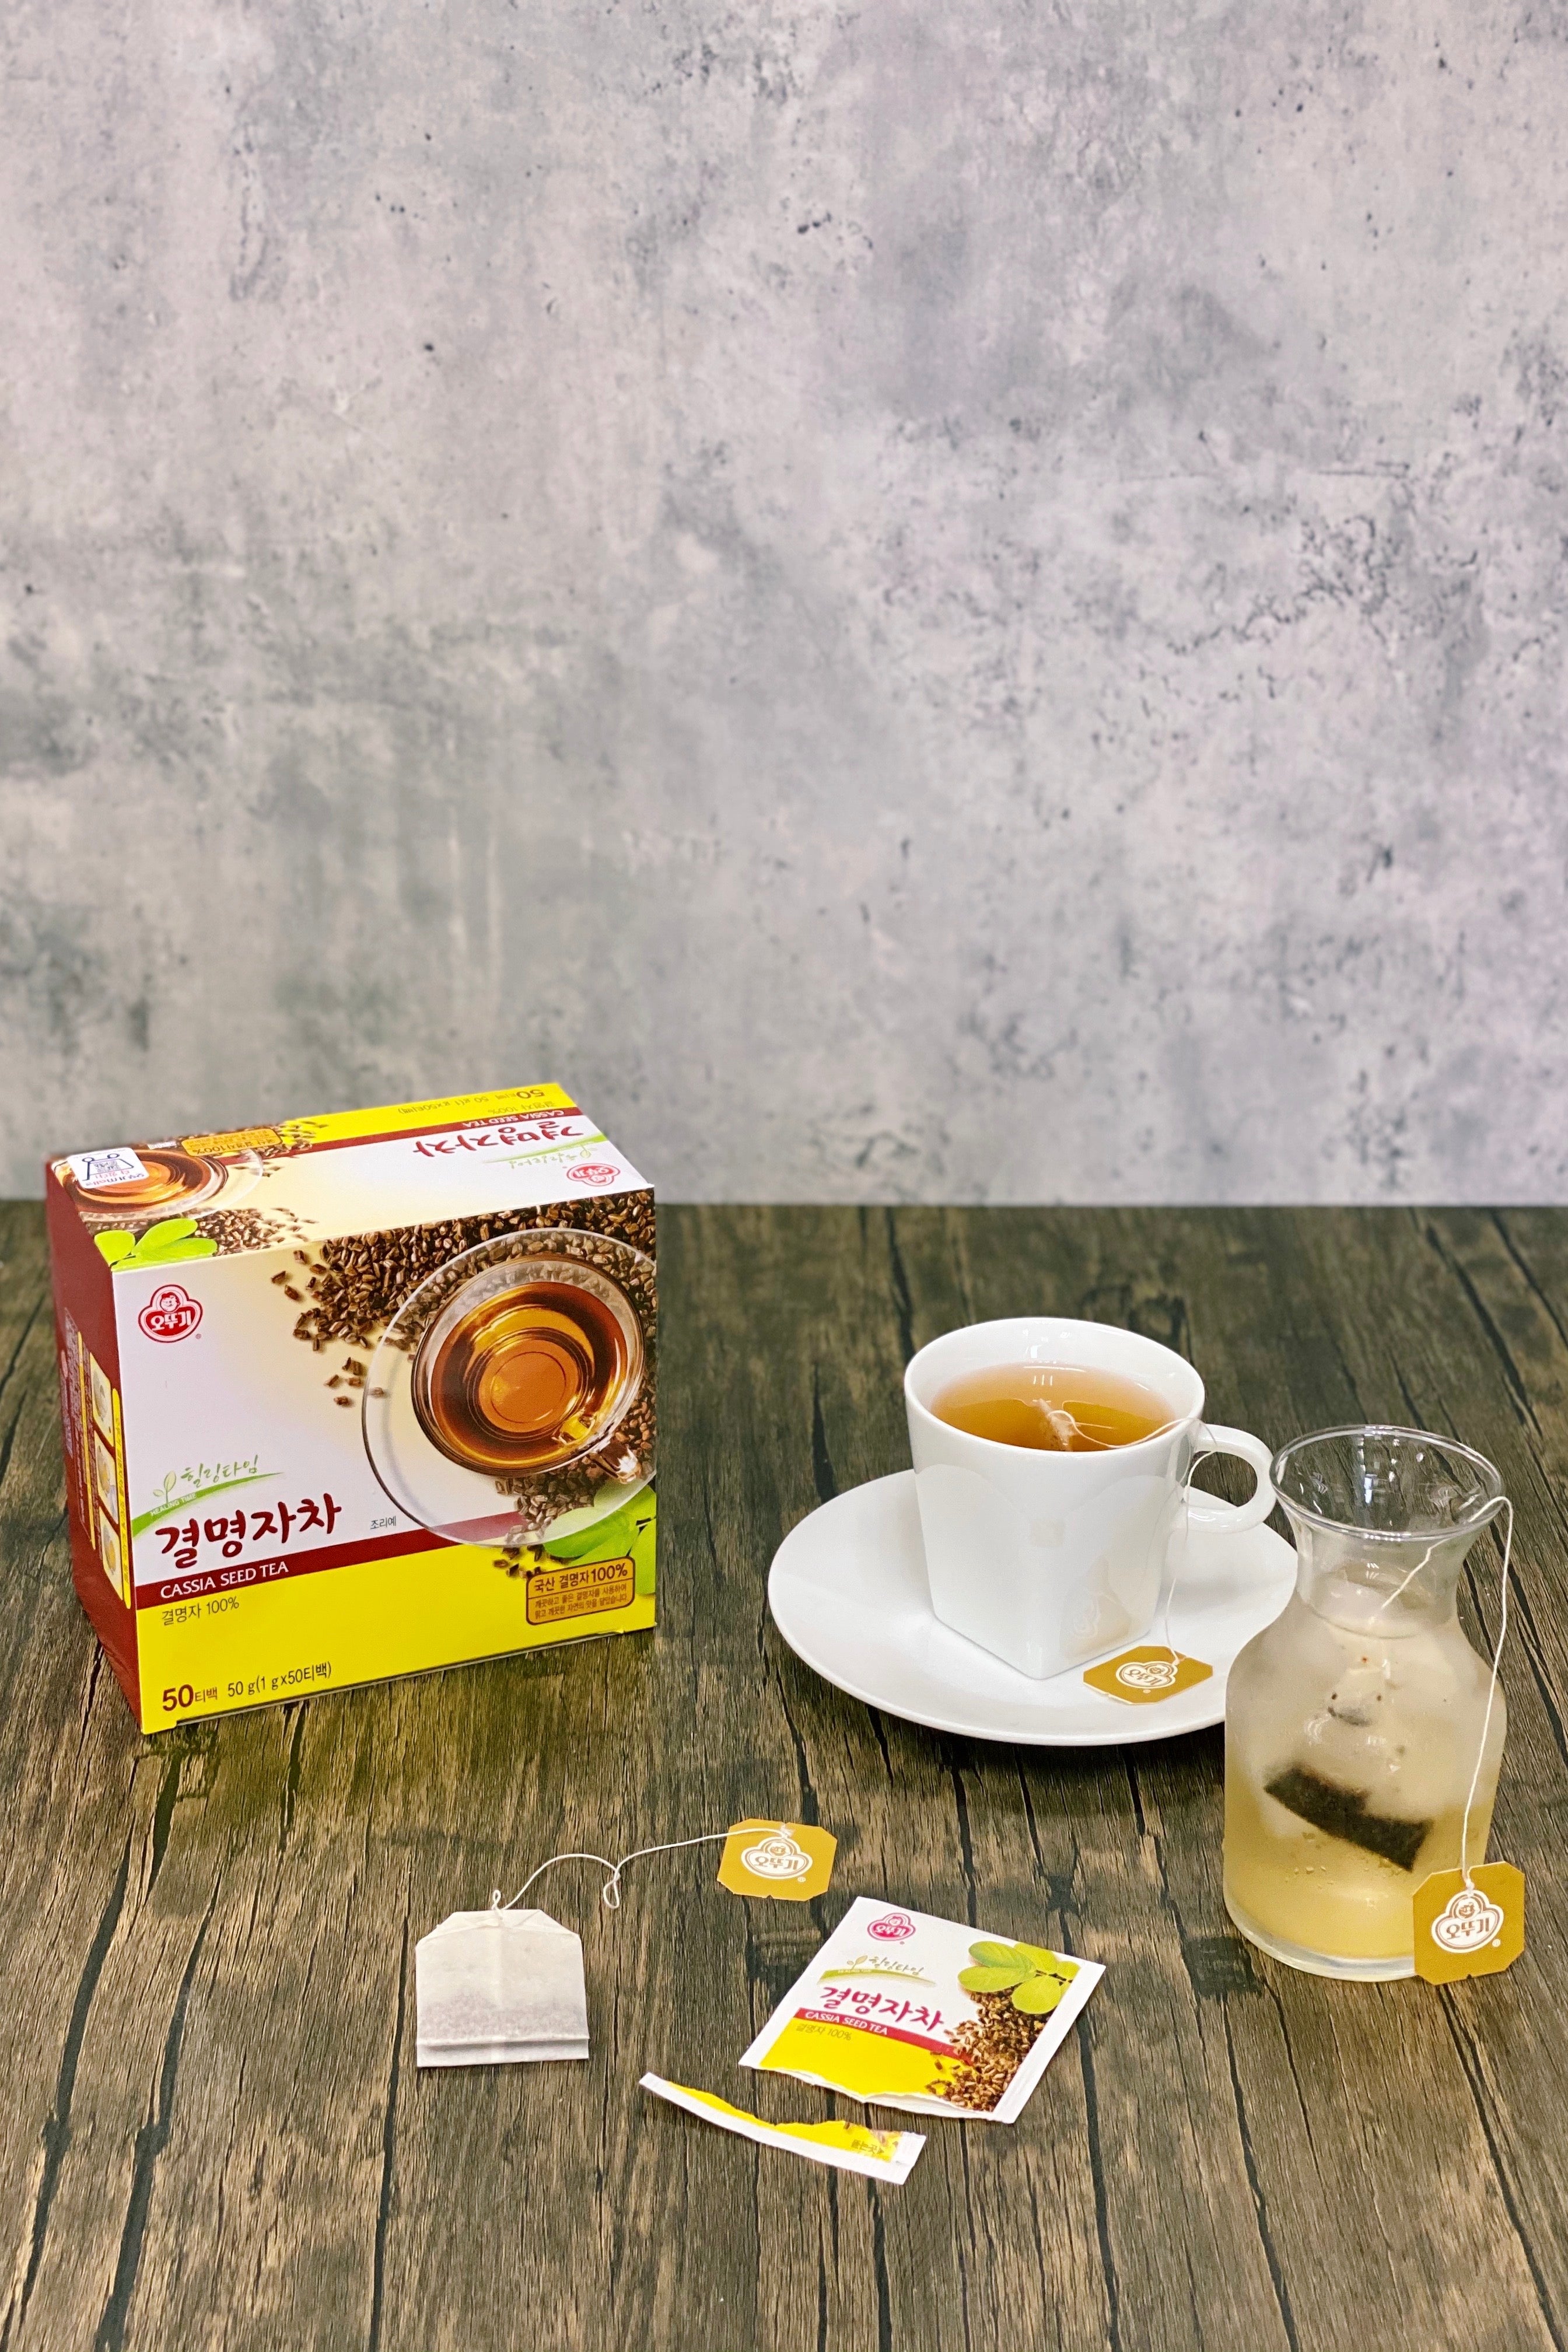 Cassia Seed Tea [50EA/BOX]